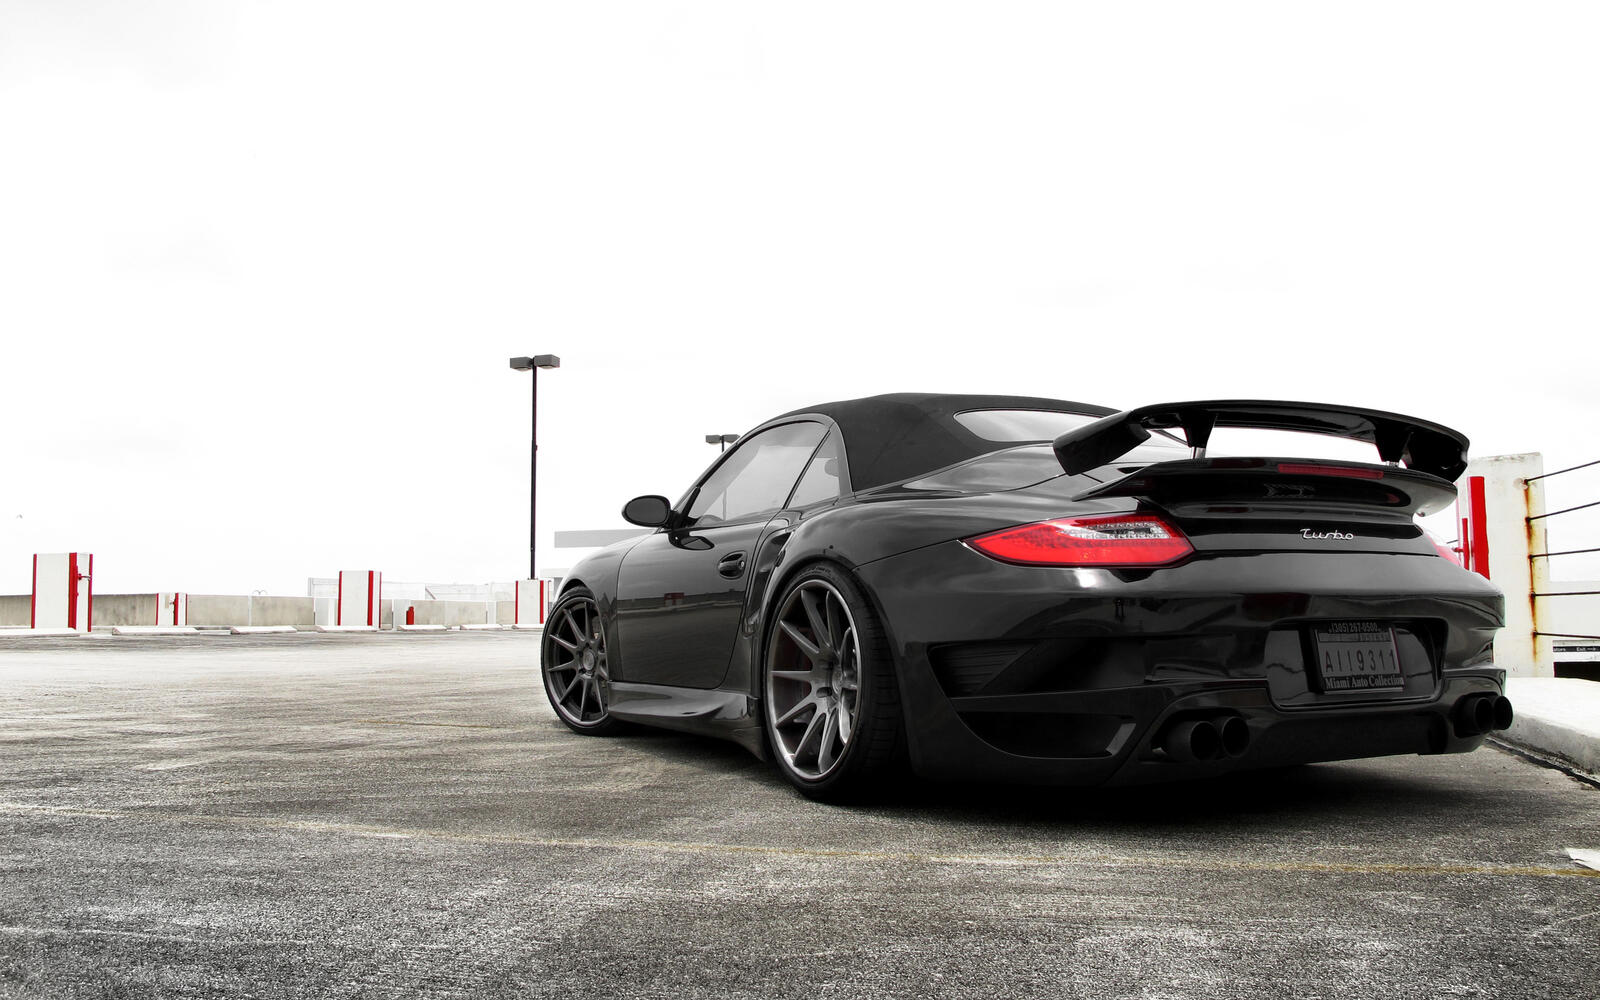 Wallpapers Porsche turbo exhaust asphalt on the desktop